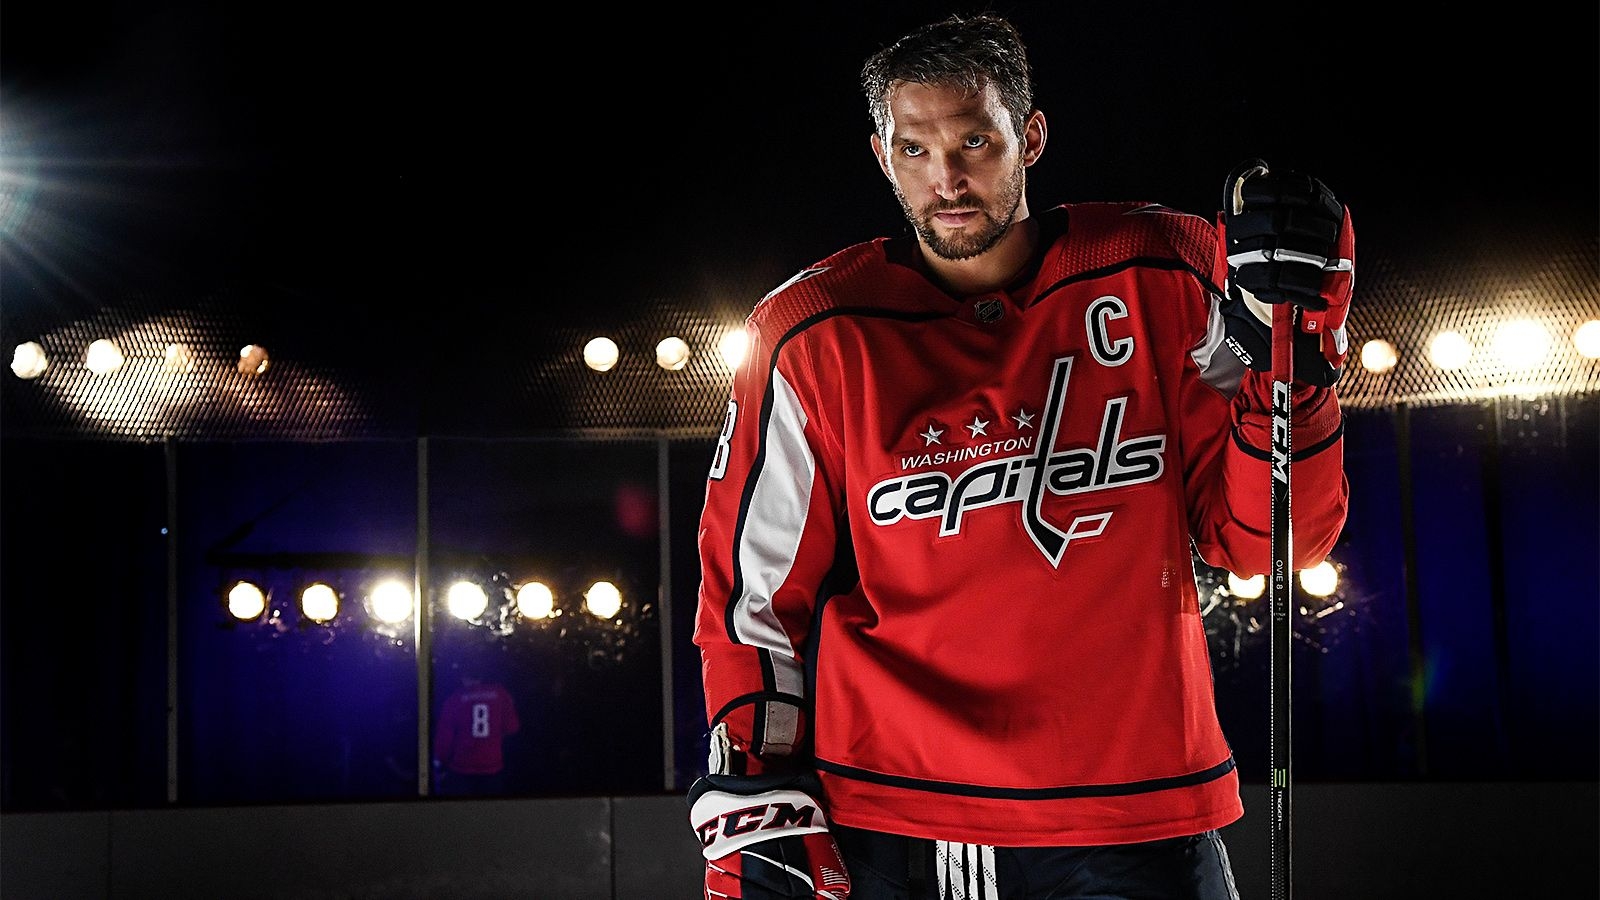 Овечкин стал вторым в списке лучших ассистентов в НХЛ среди россиян